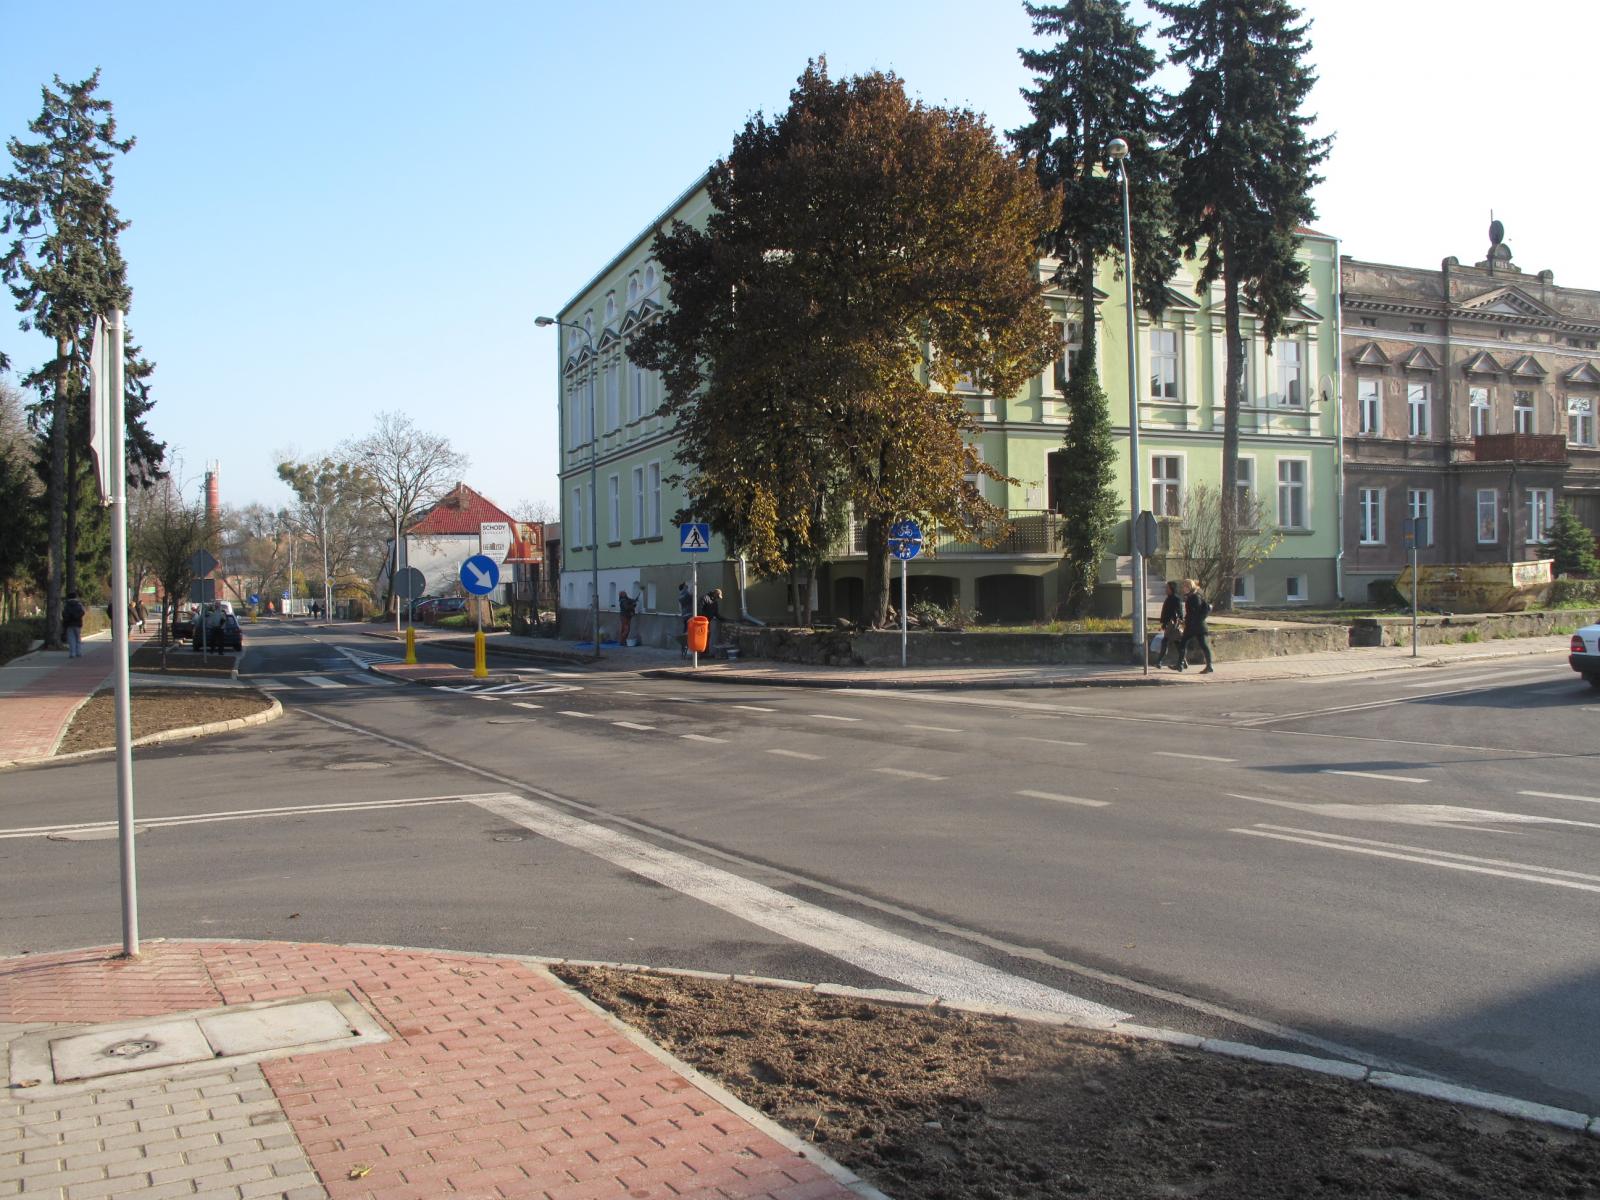 Skrzyżowanie ulic Słowackiego i Kościuszki. Widać wysepkę dla pieszych, budynki, drzewa, piesi na chodnikach